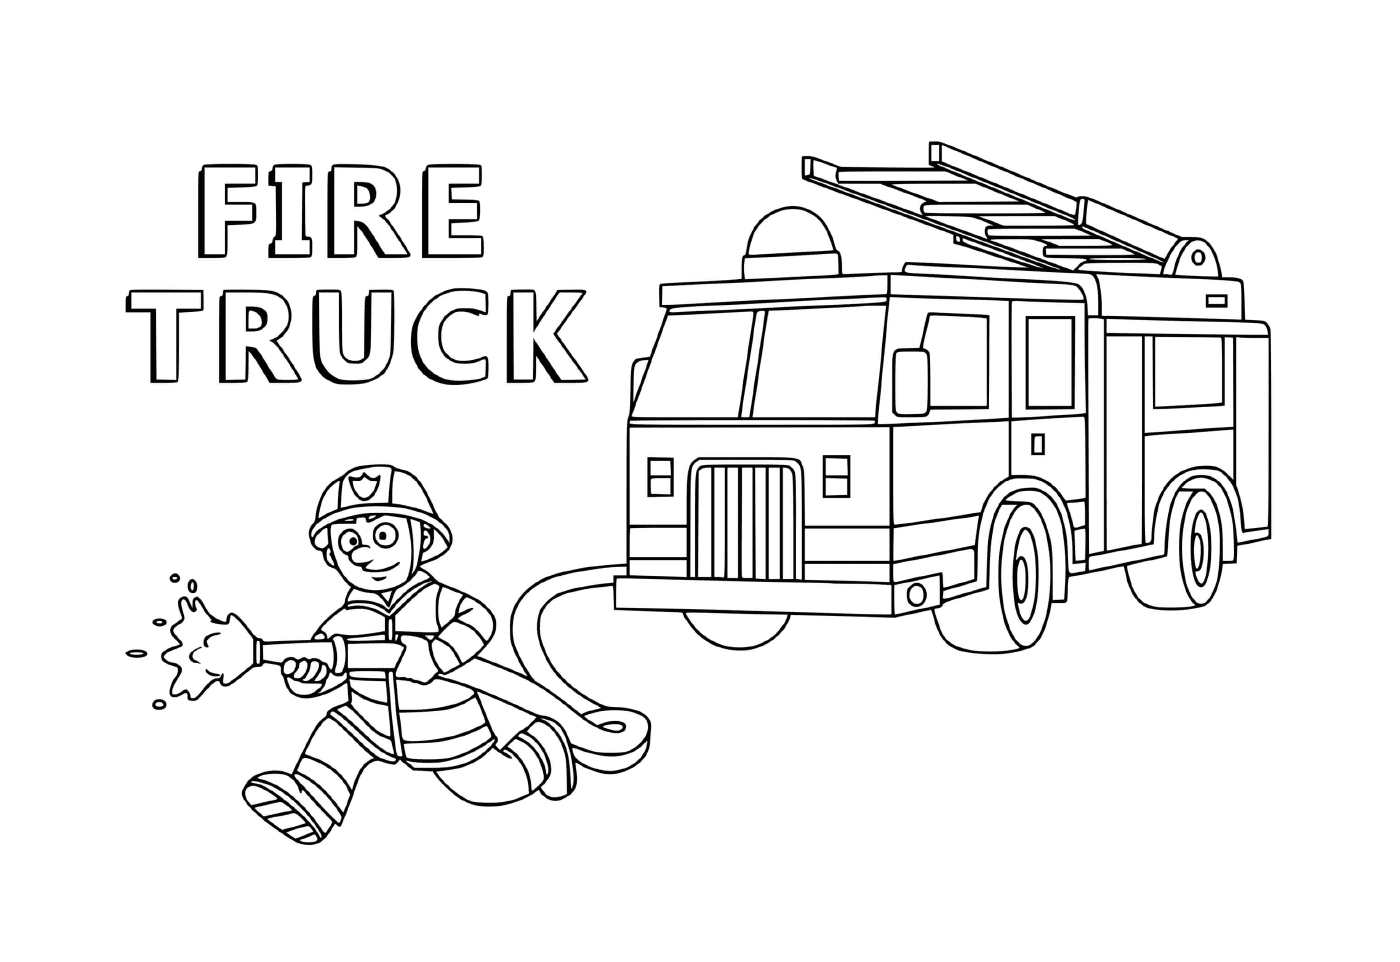  नागरिकों की सेवा में फायरमैन के ट्रक 